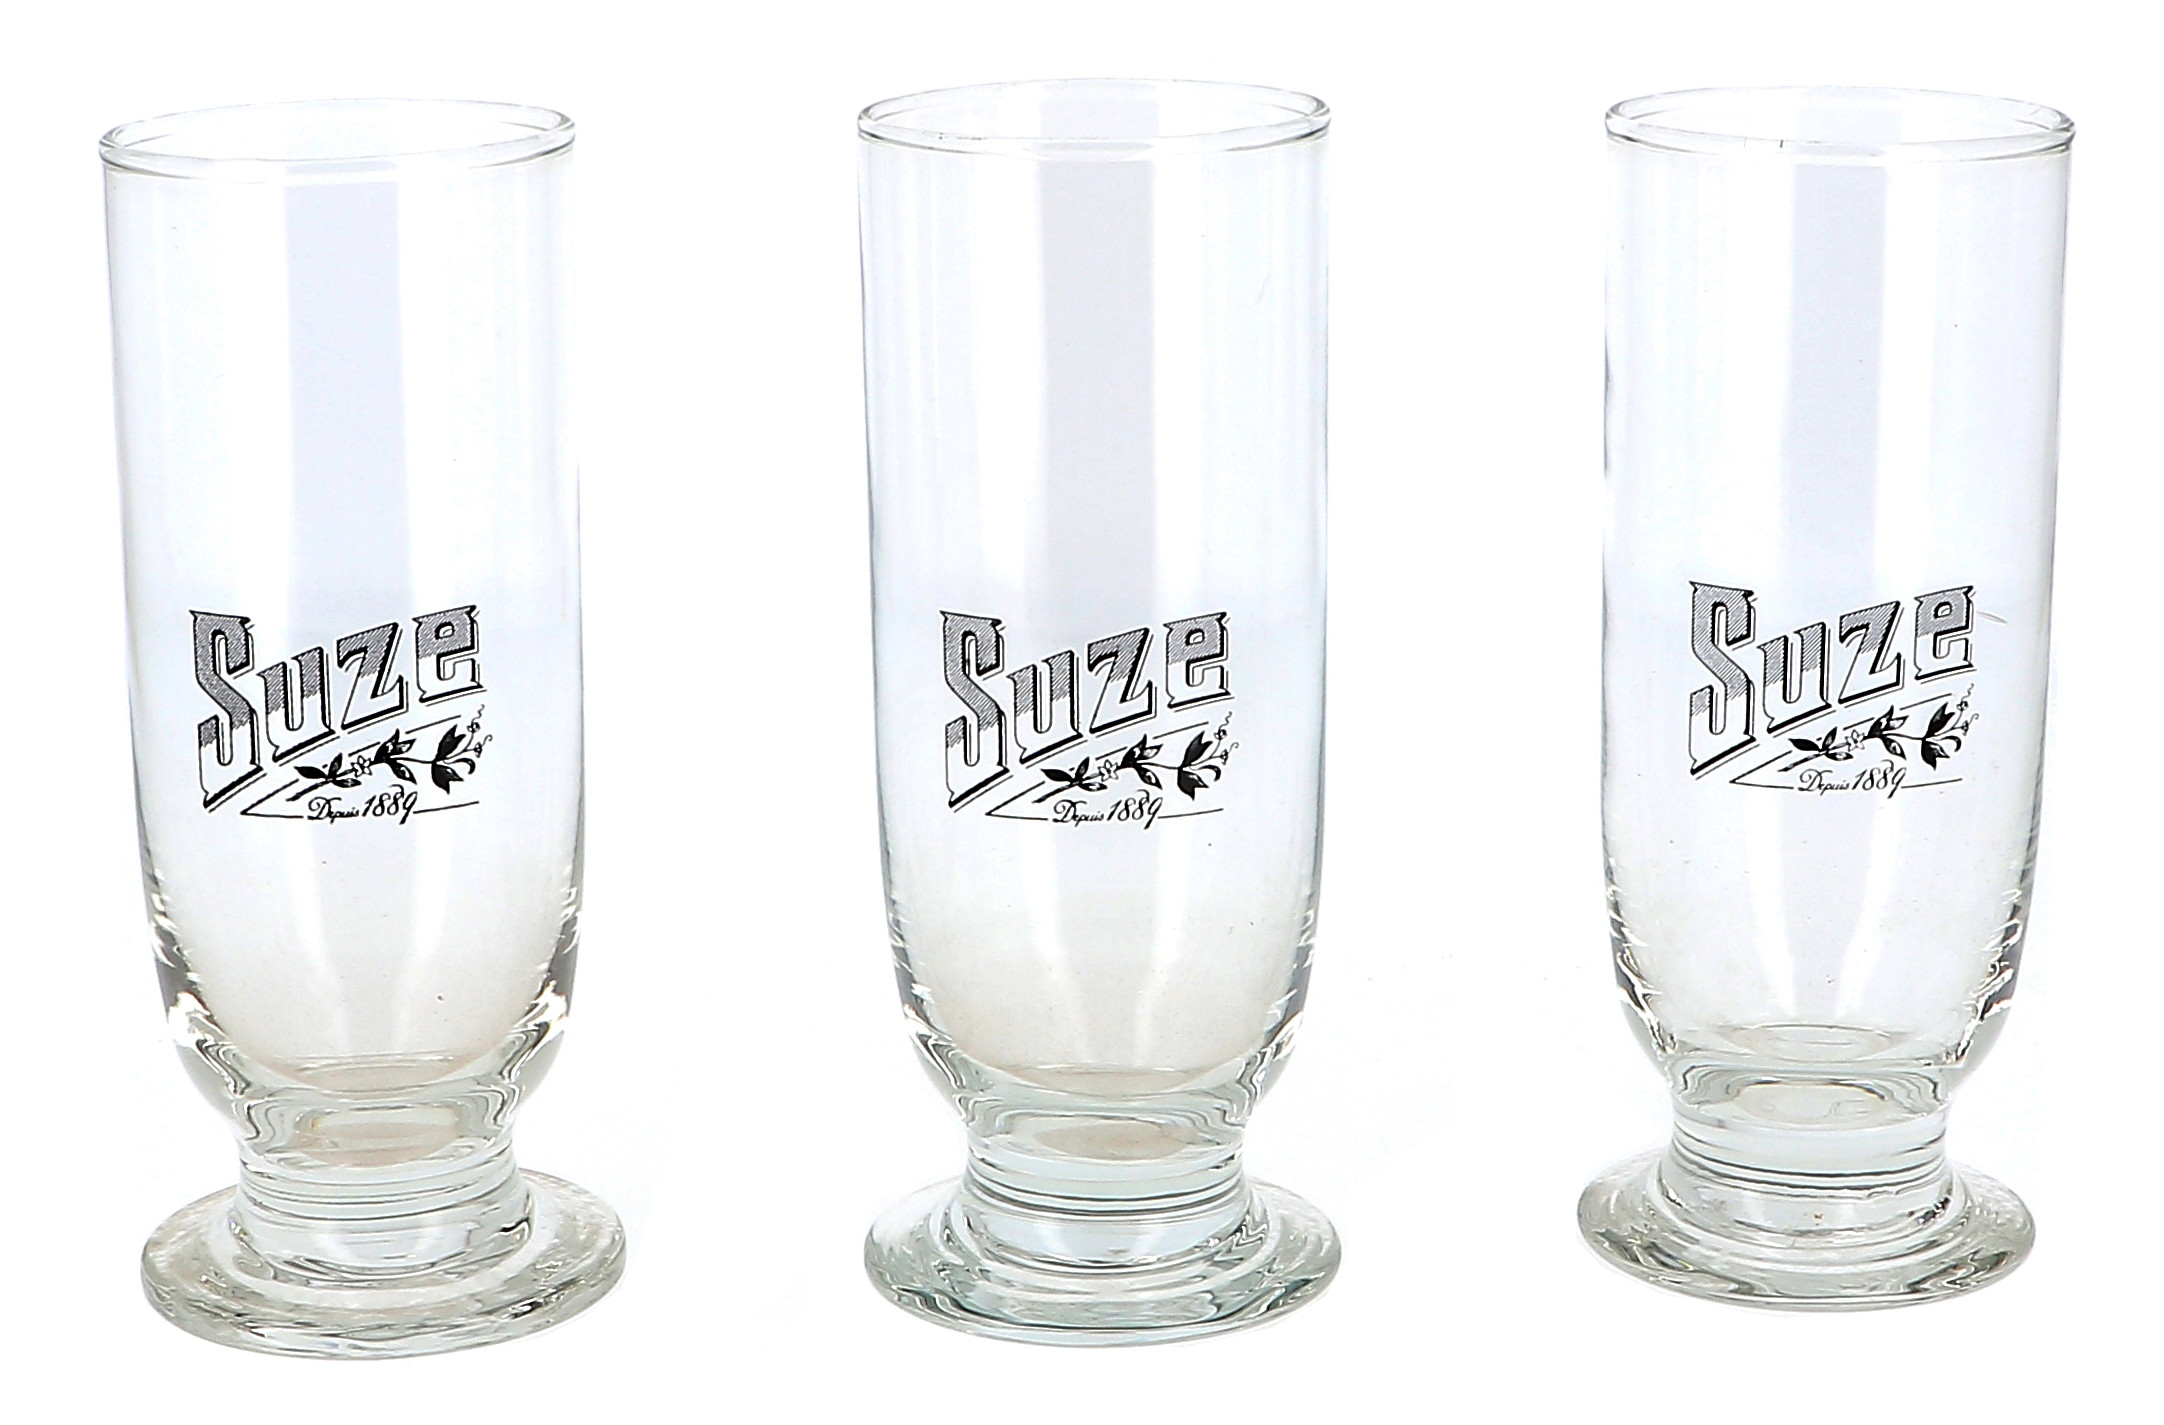 Productief Verslinden Decoratief Glas Suze 6x1st Online goedkoop glazen kopen - Nevejan